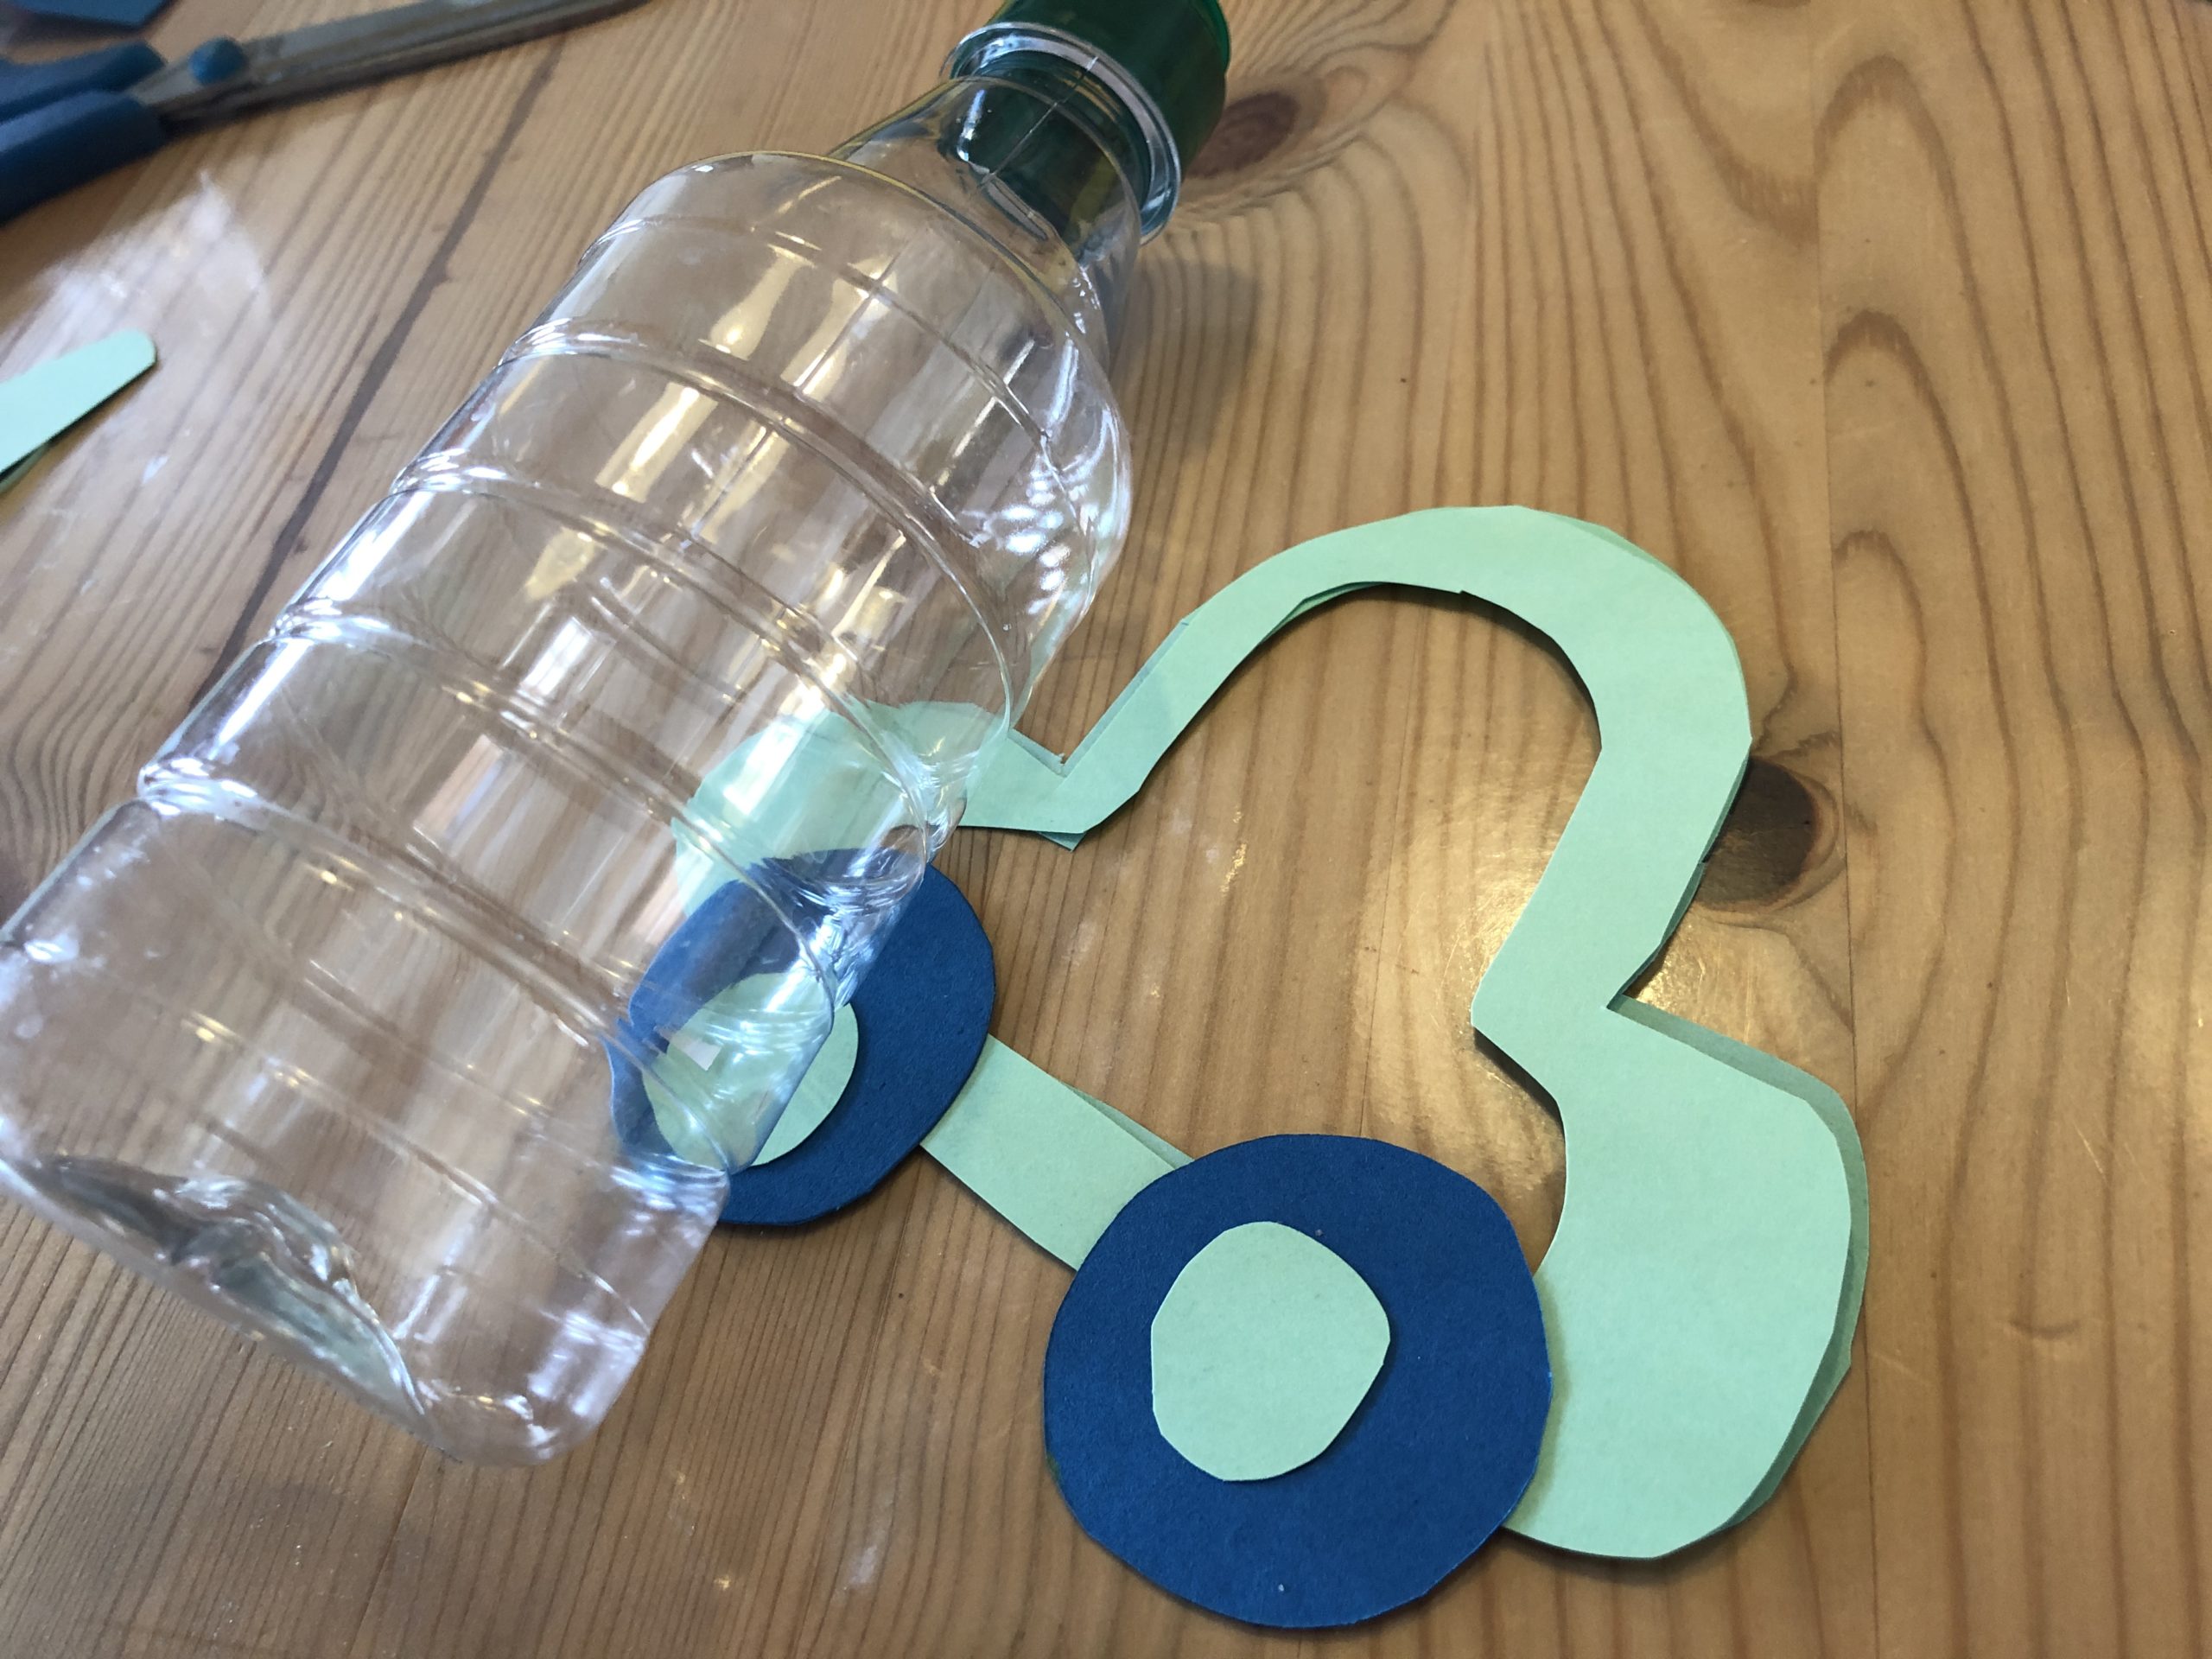 Bild zum Schritt 7 für das Bastel- und DIY-Abenteuer für Kinder: 'Sucht euch eine Plastikflasche und kürzt sie mit mit einem...'